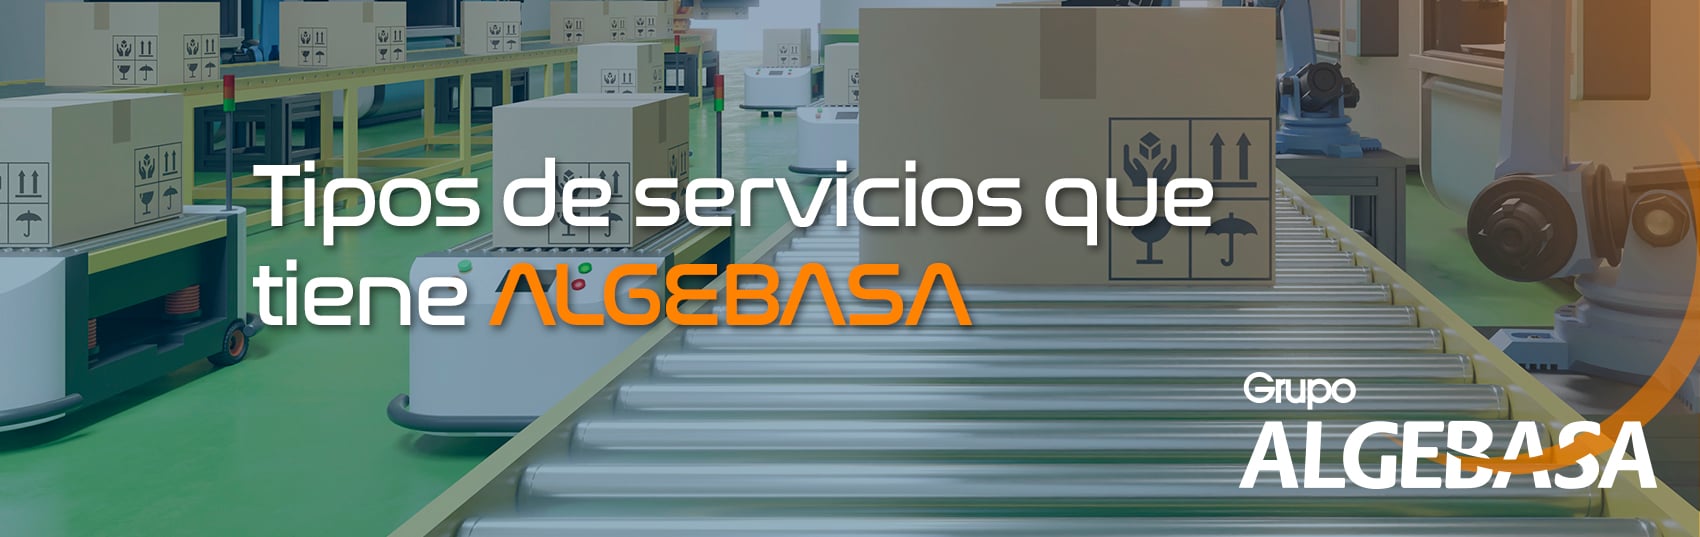 Tipos de servicios que tiene ALGEBASA_banner